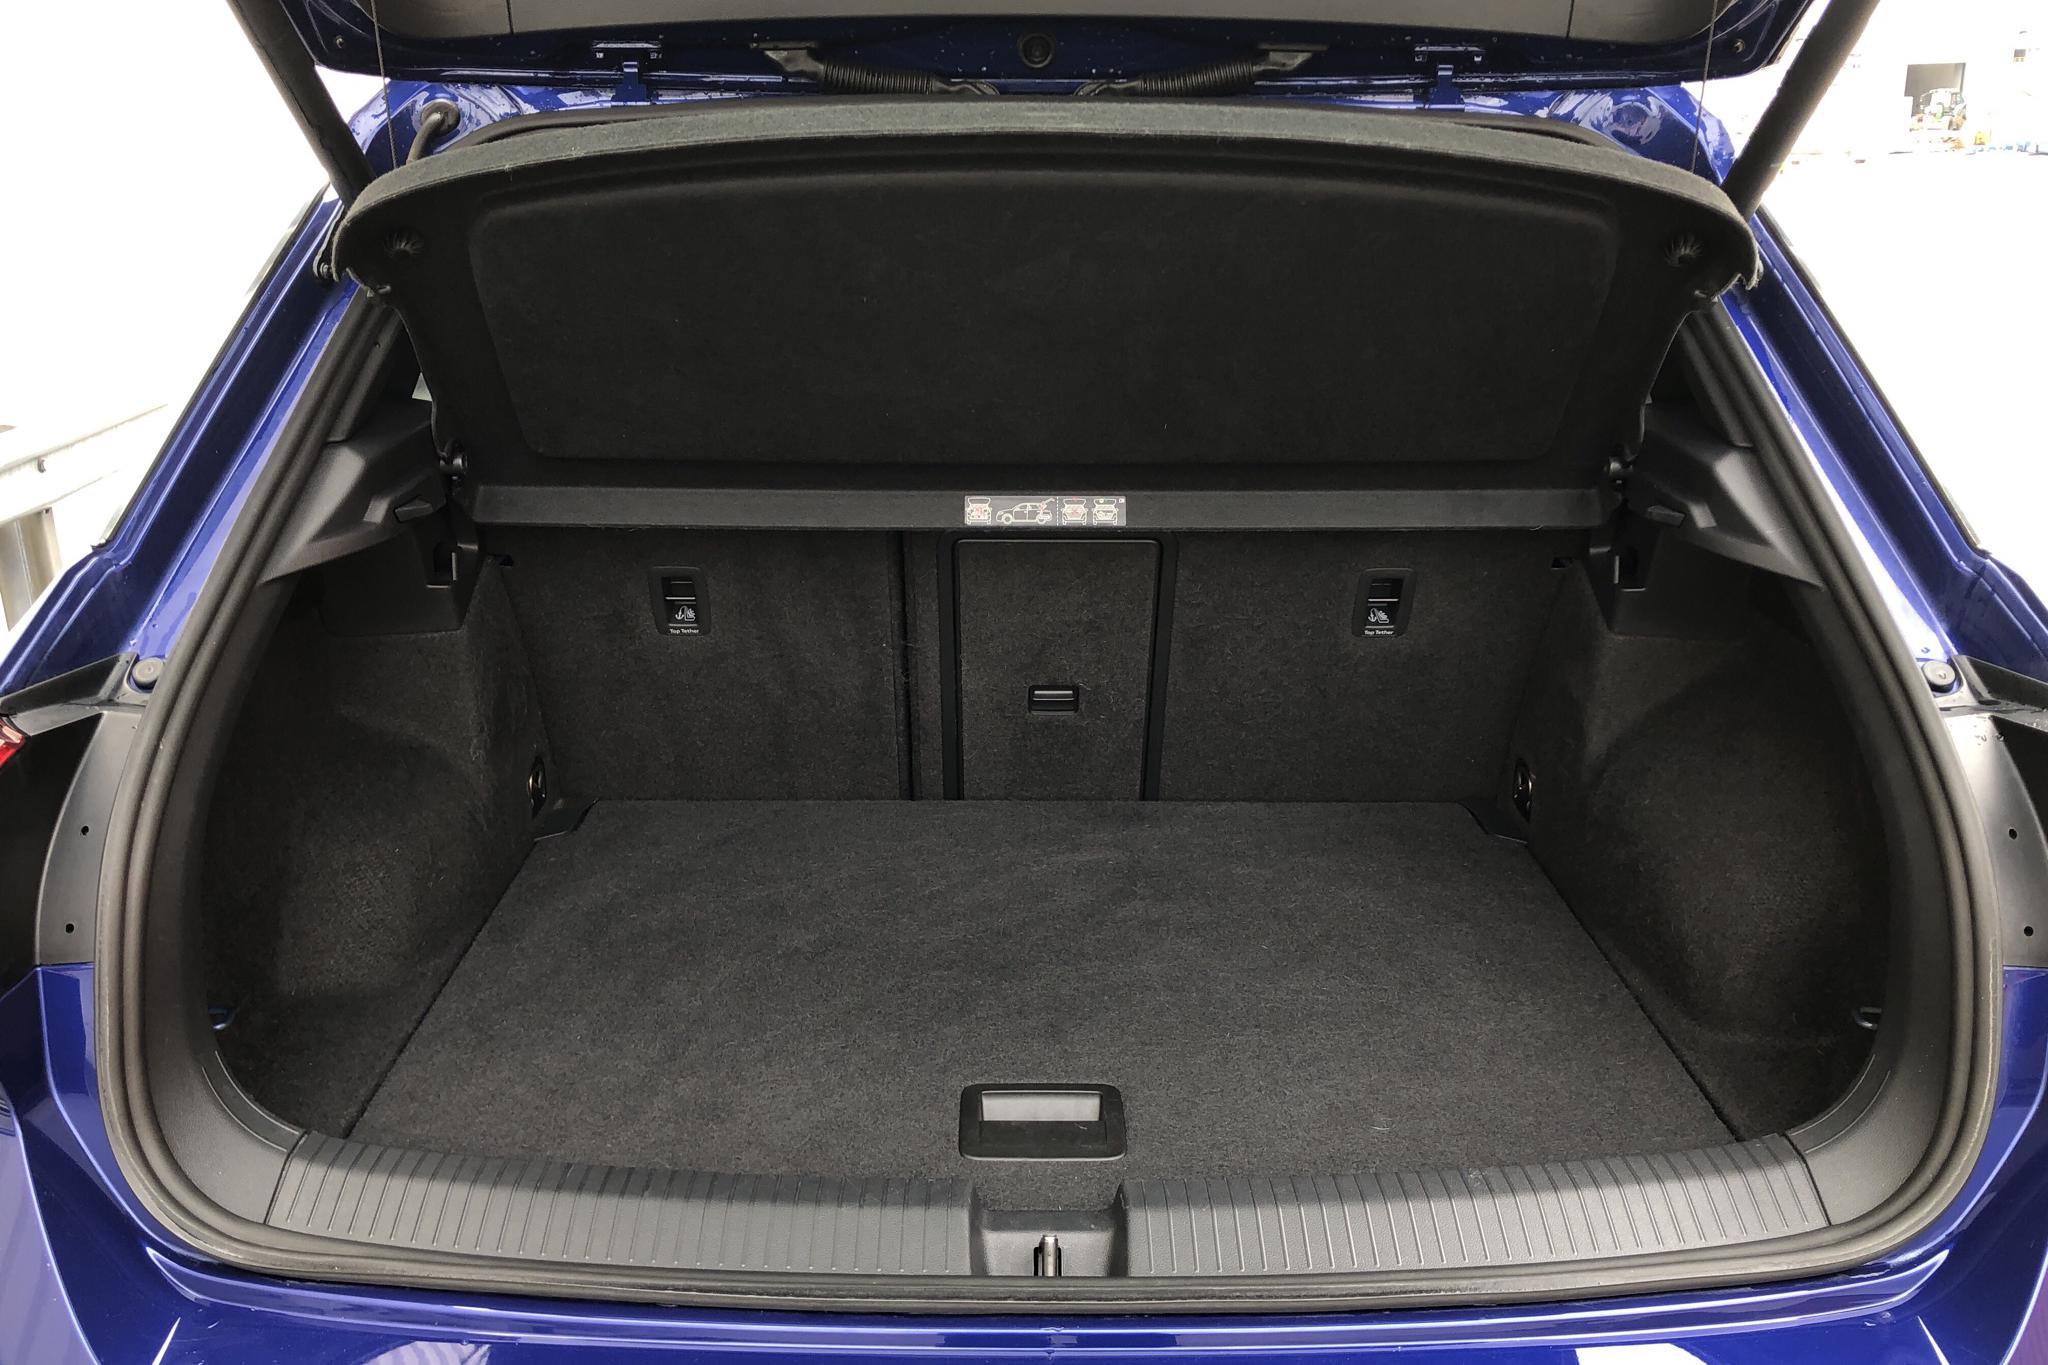 VW T-Roc R 4MOTION (300hk) - 27 000 km - Automatic - blue - 2020